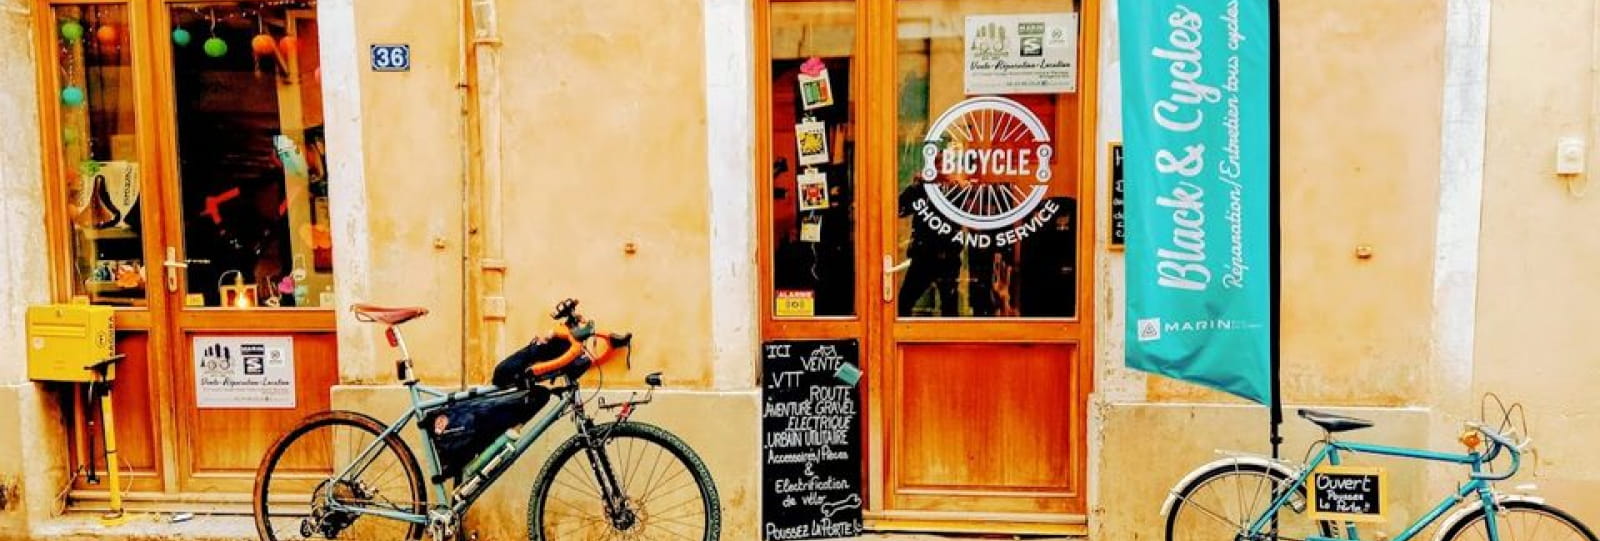 Location de vélos, vélos électriques, réparation avec Black & Cycles